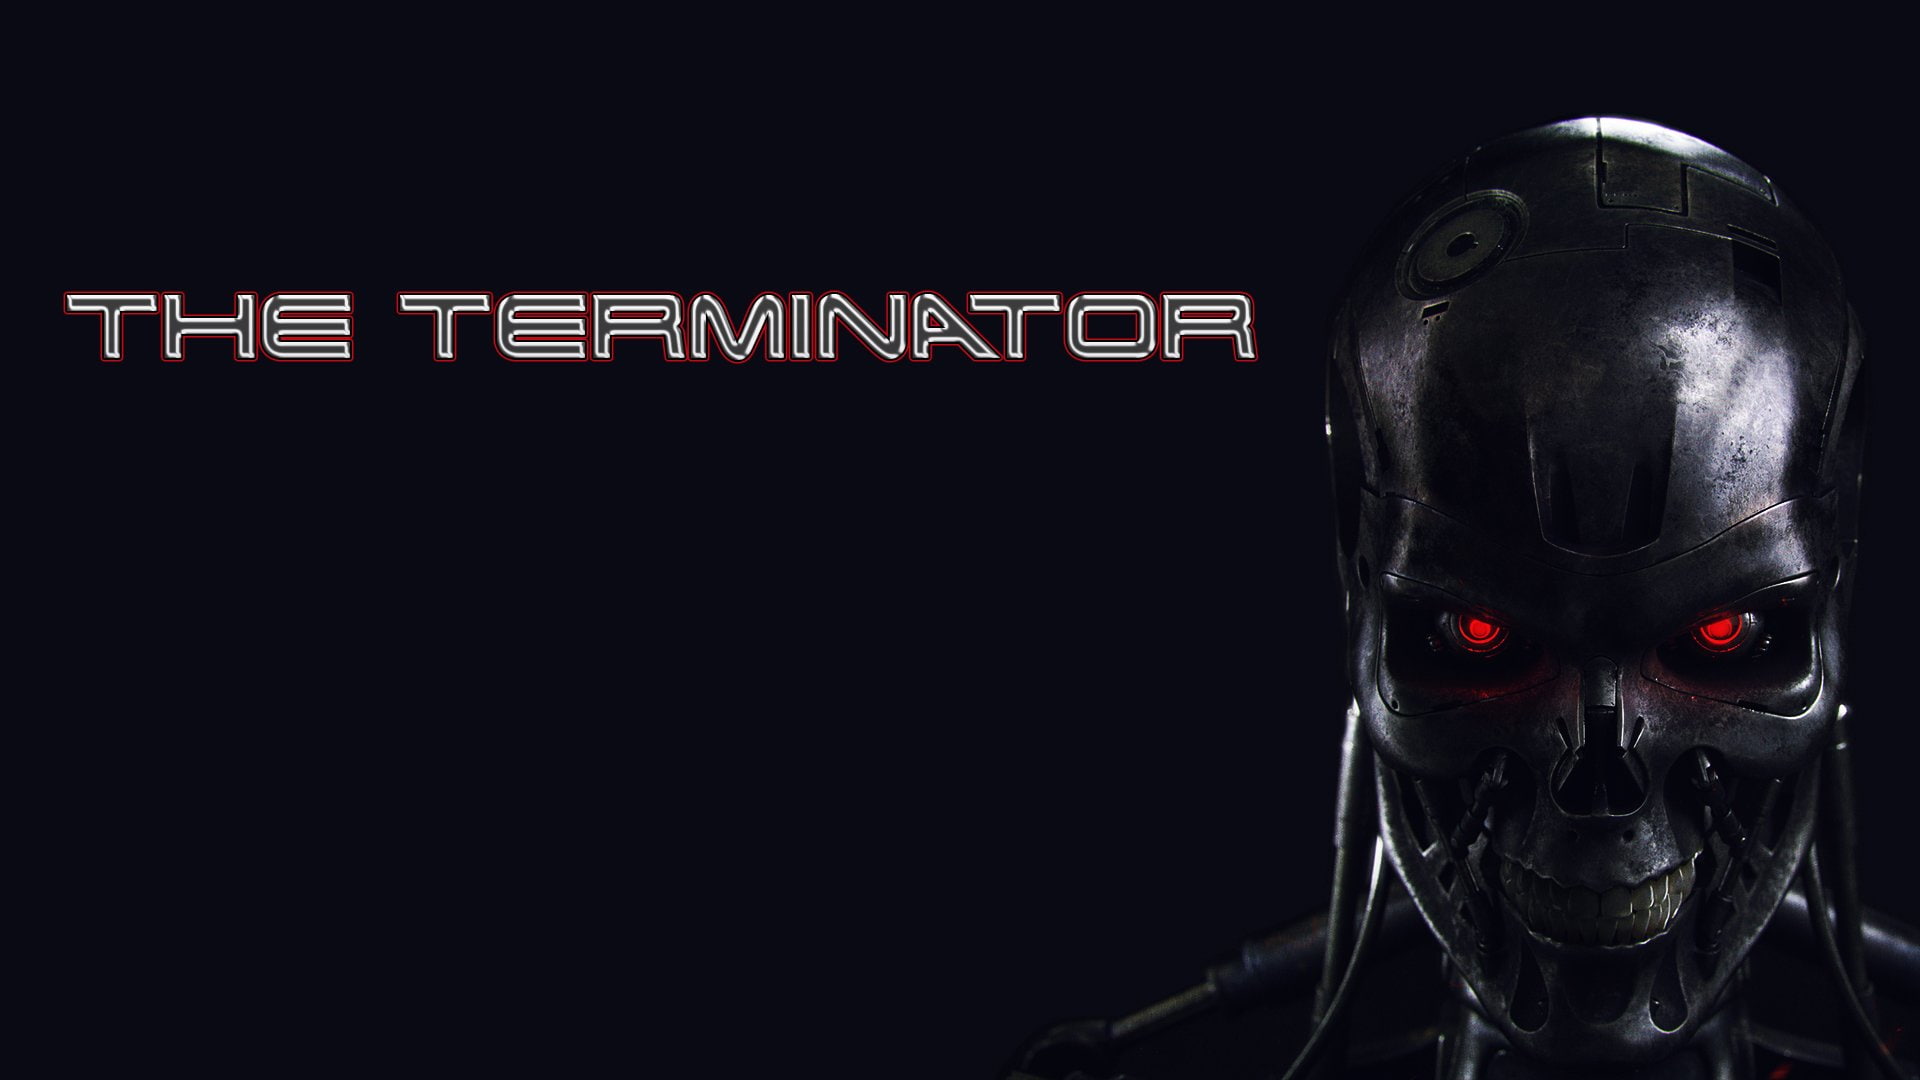 Terminator, The Terminator, Movie, Robot